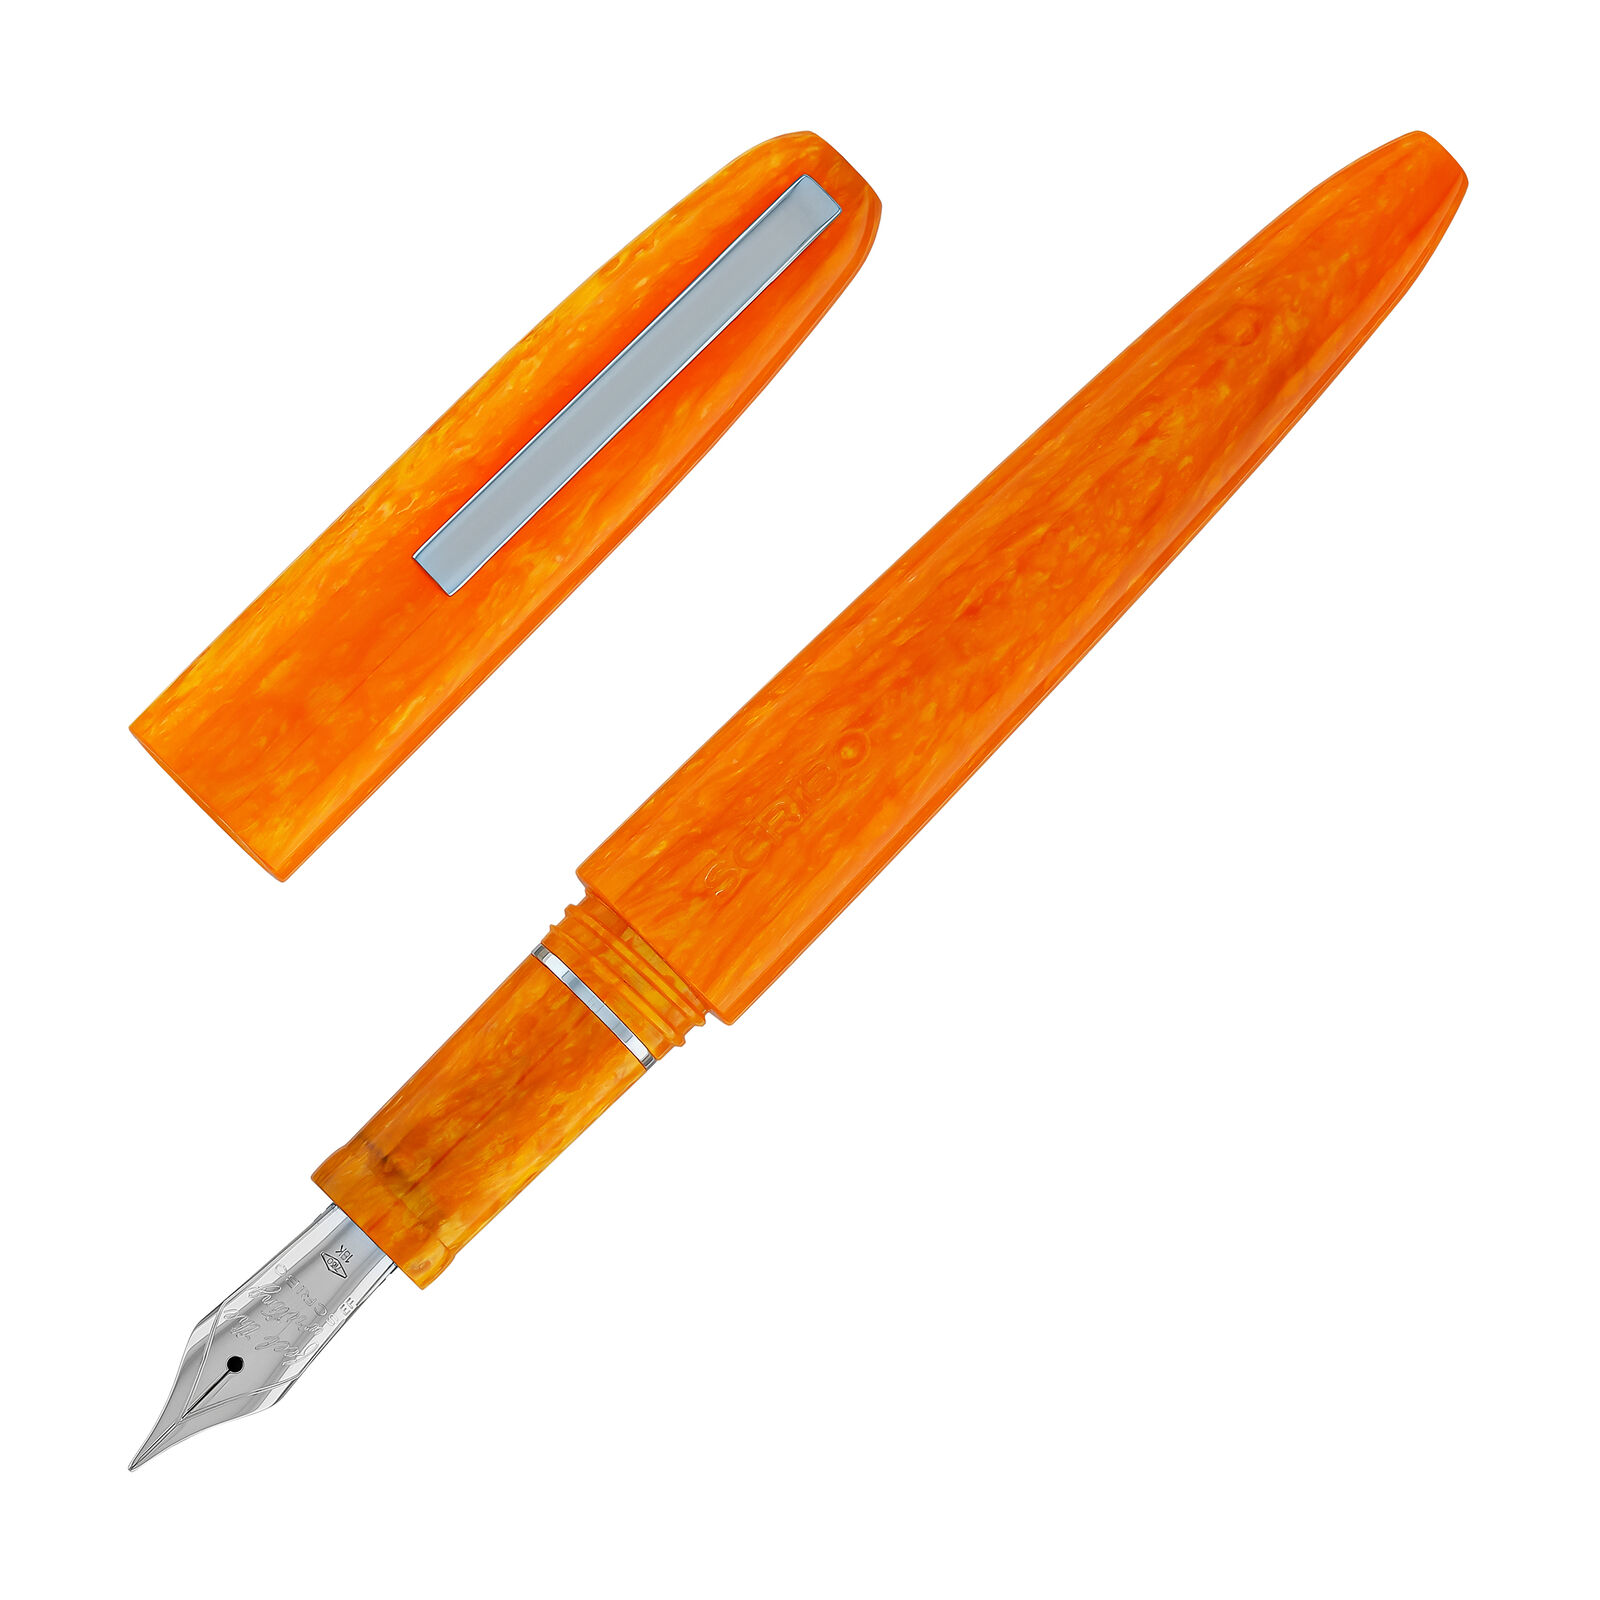 Scribo Piuma Fountain Pen in Corniola 14K Flexible Gold Nib - Fine Point - NEW